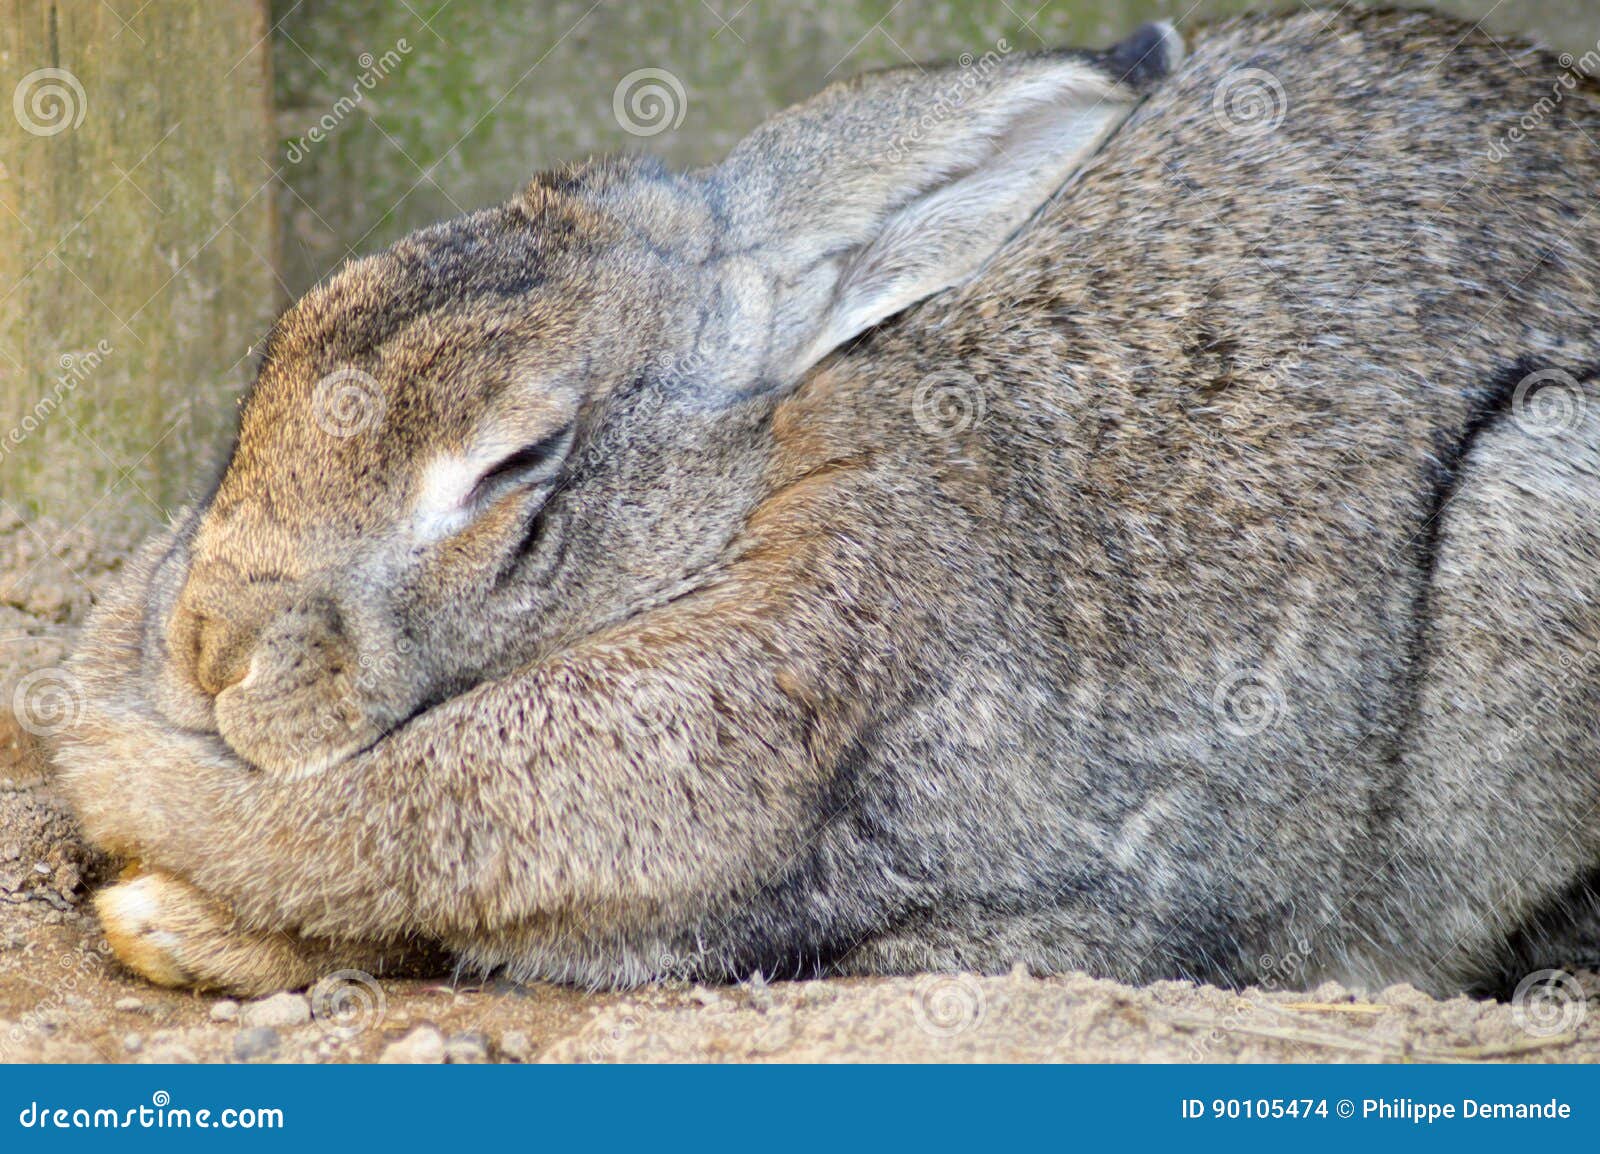 rabbit gray in full nap